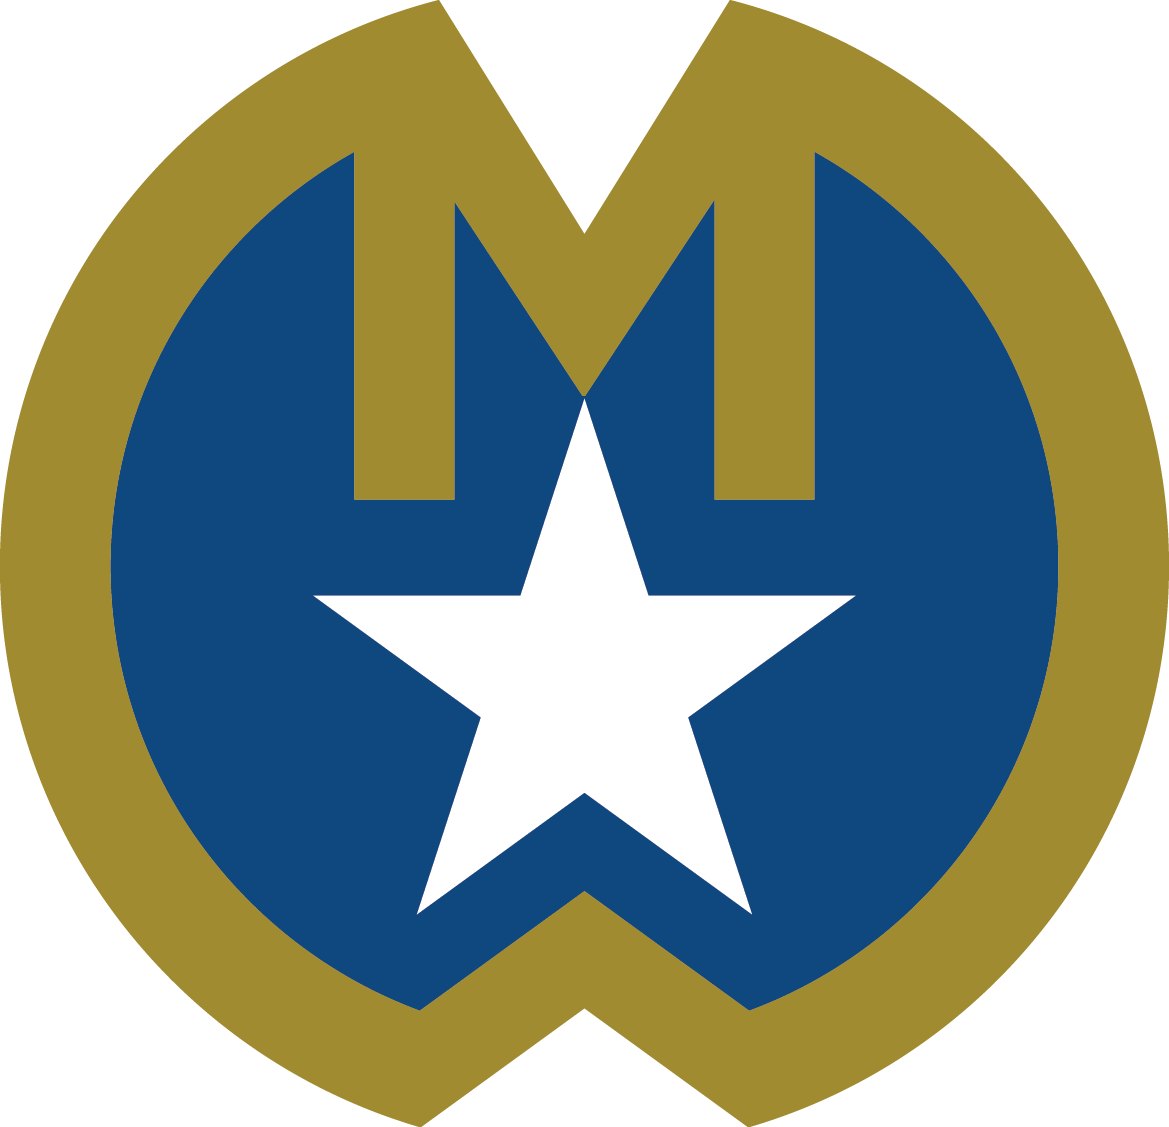 Medallion program badge